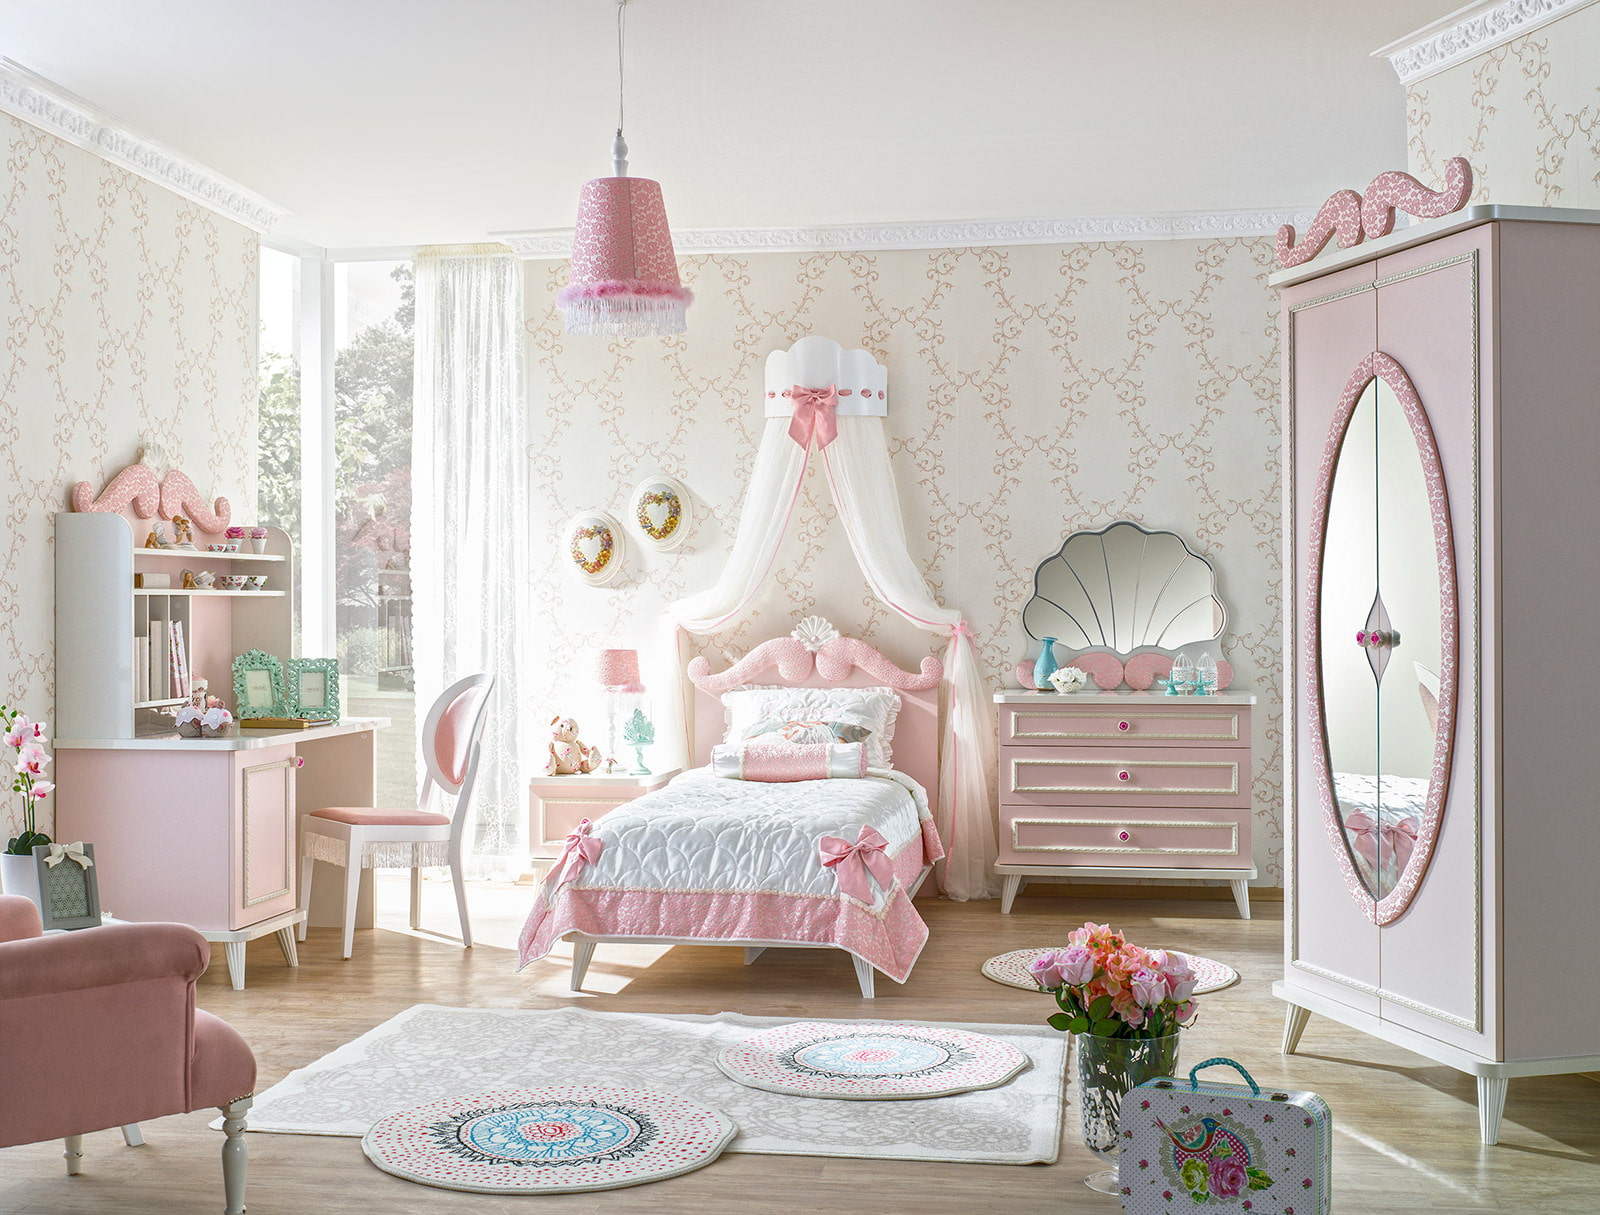 Cameră pentru copii în roz